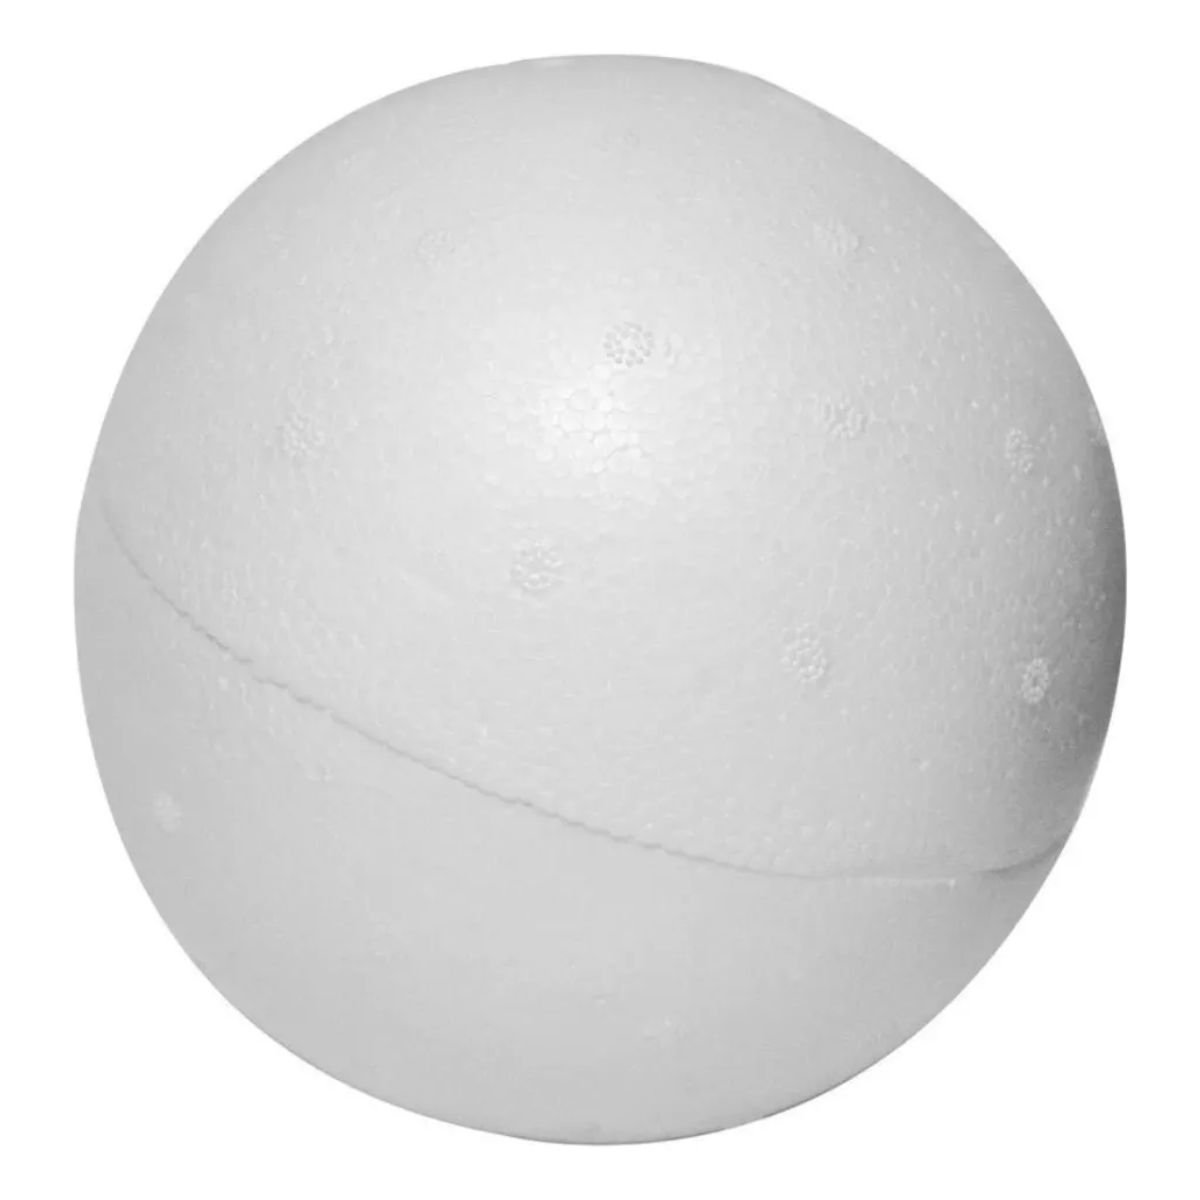 Vidro Globo/bola/esfera 12cm Diâmetro Vidro Fosco sem Colar - 10